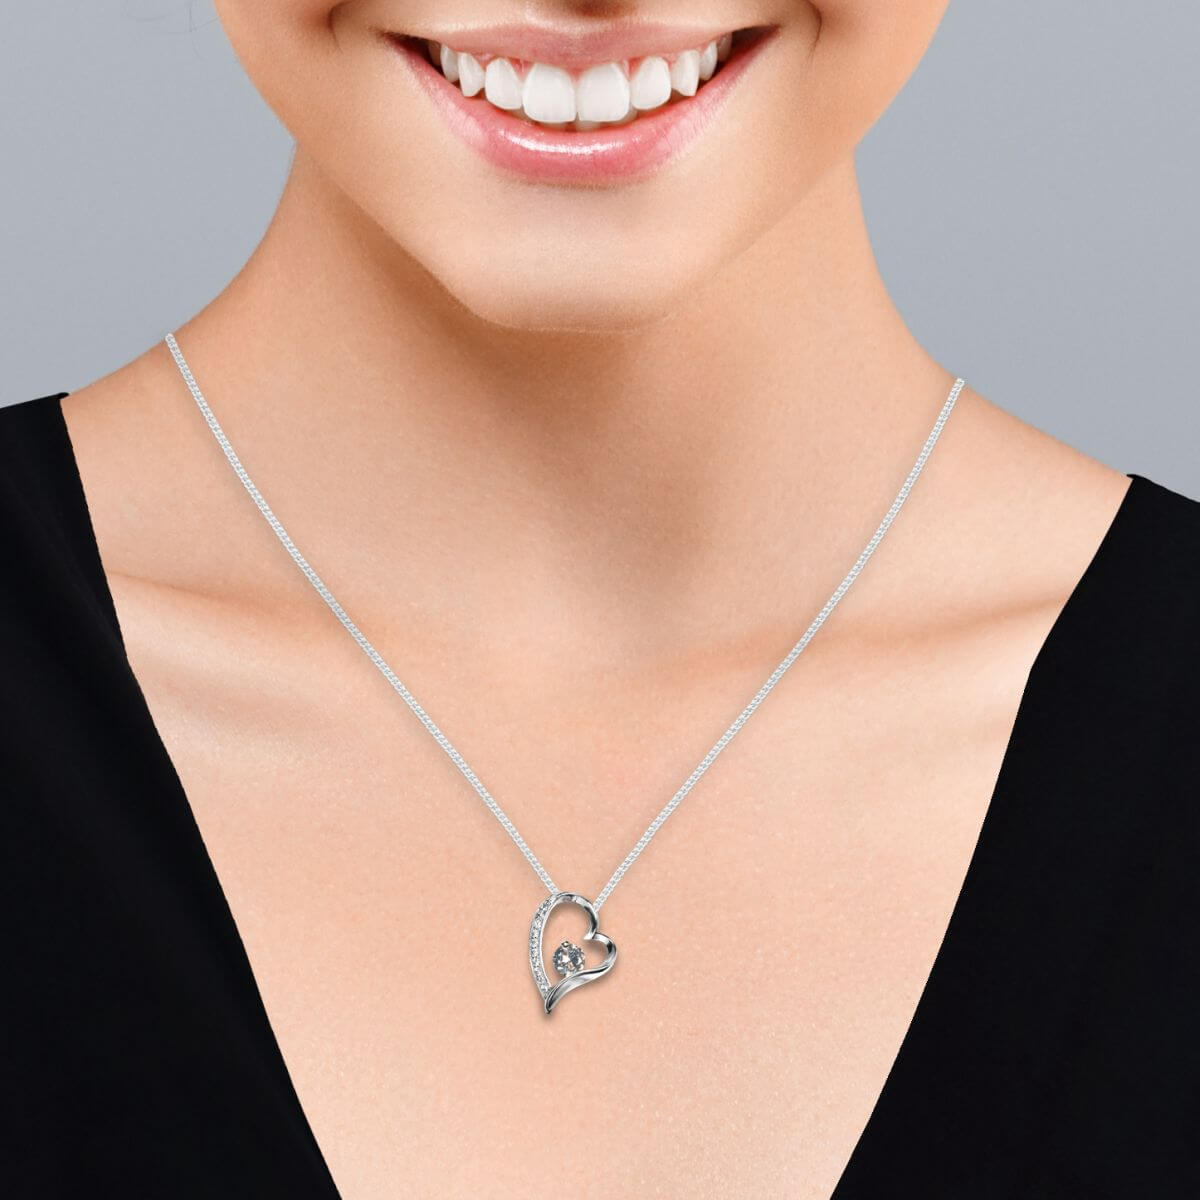 BIG ON Jewellery - Eternal-Heart-Necklace-jewellery-on-model